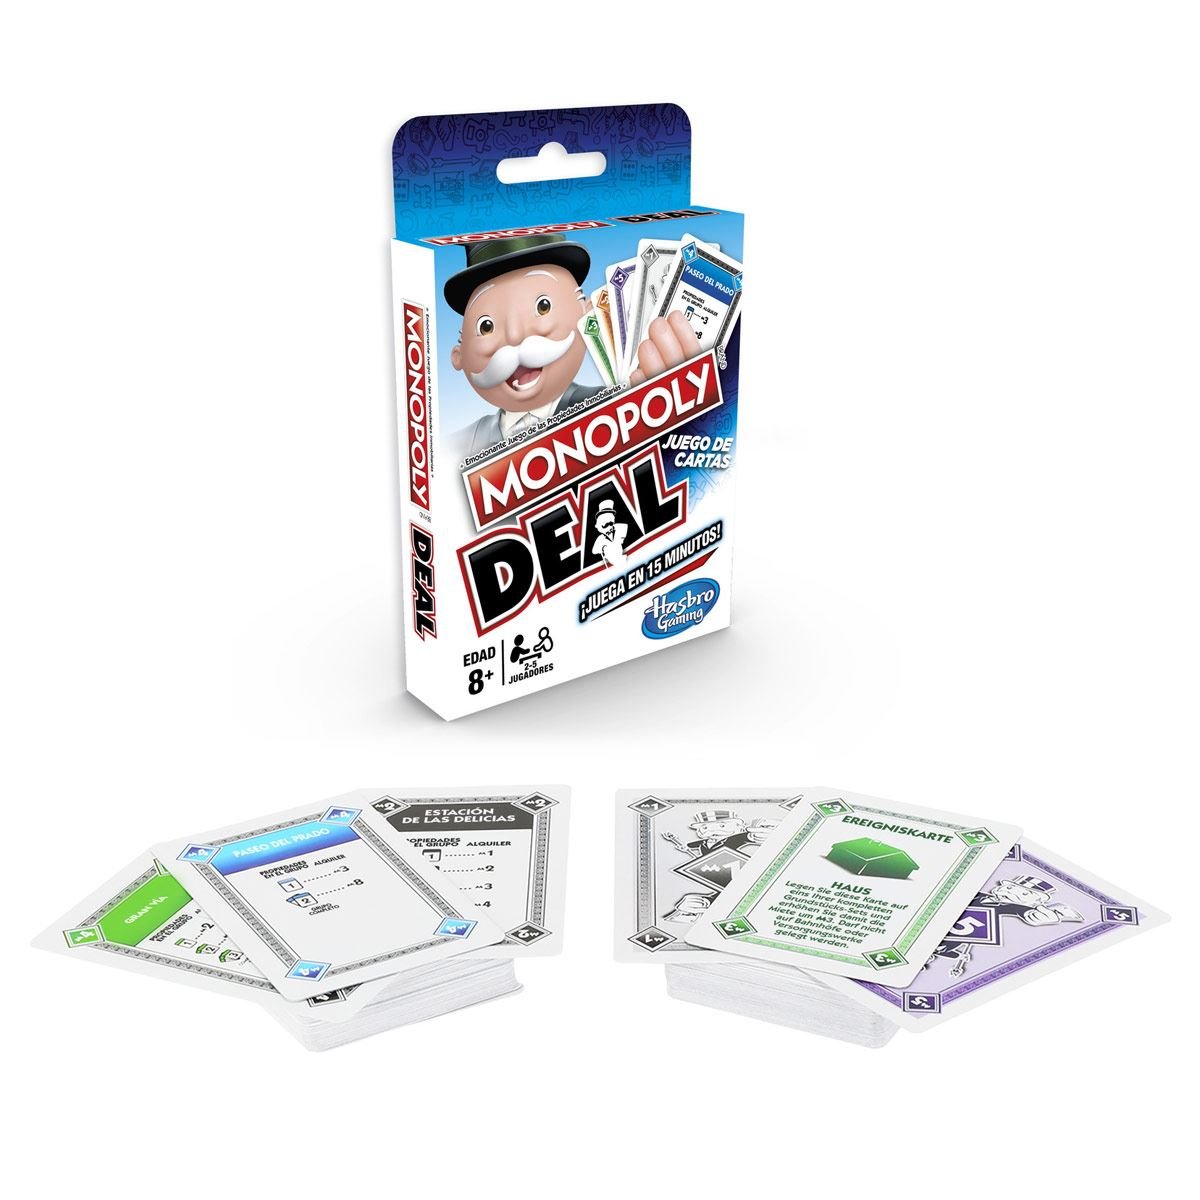 Juego de Mesa Monopoly Deal Juego de Cartas Hasbro Gaming